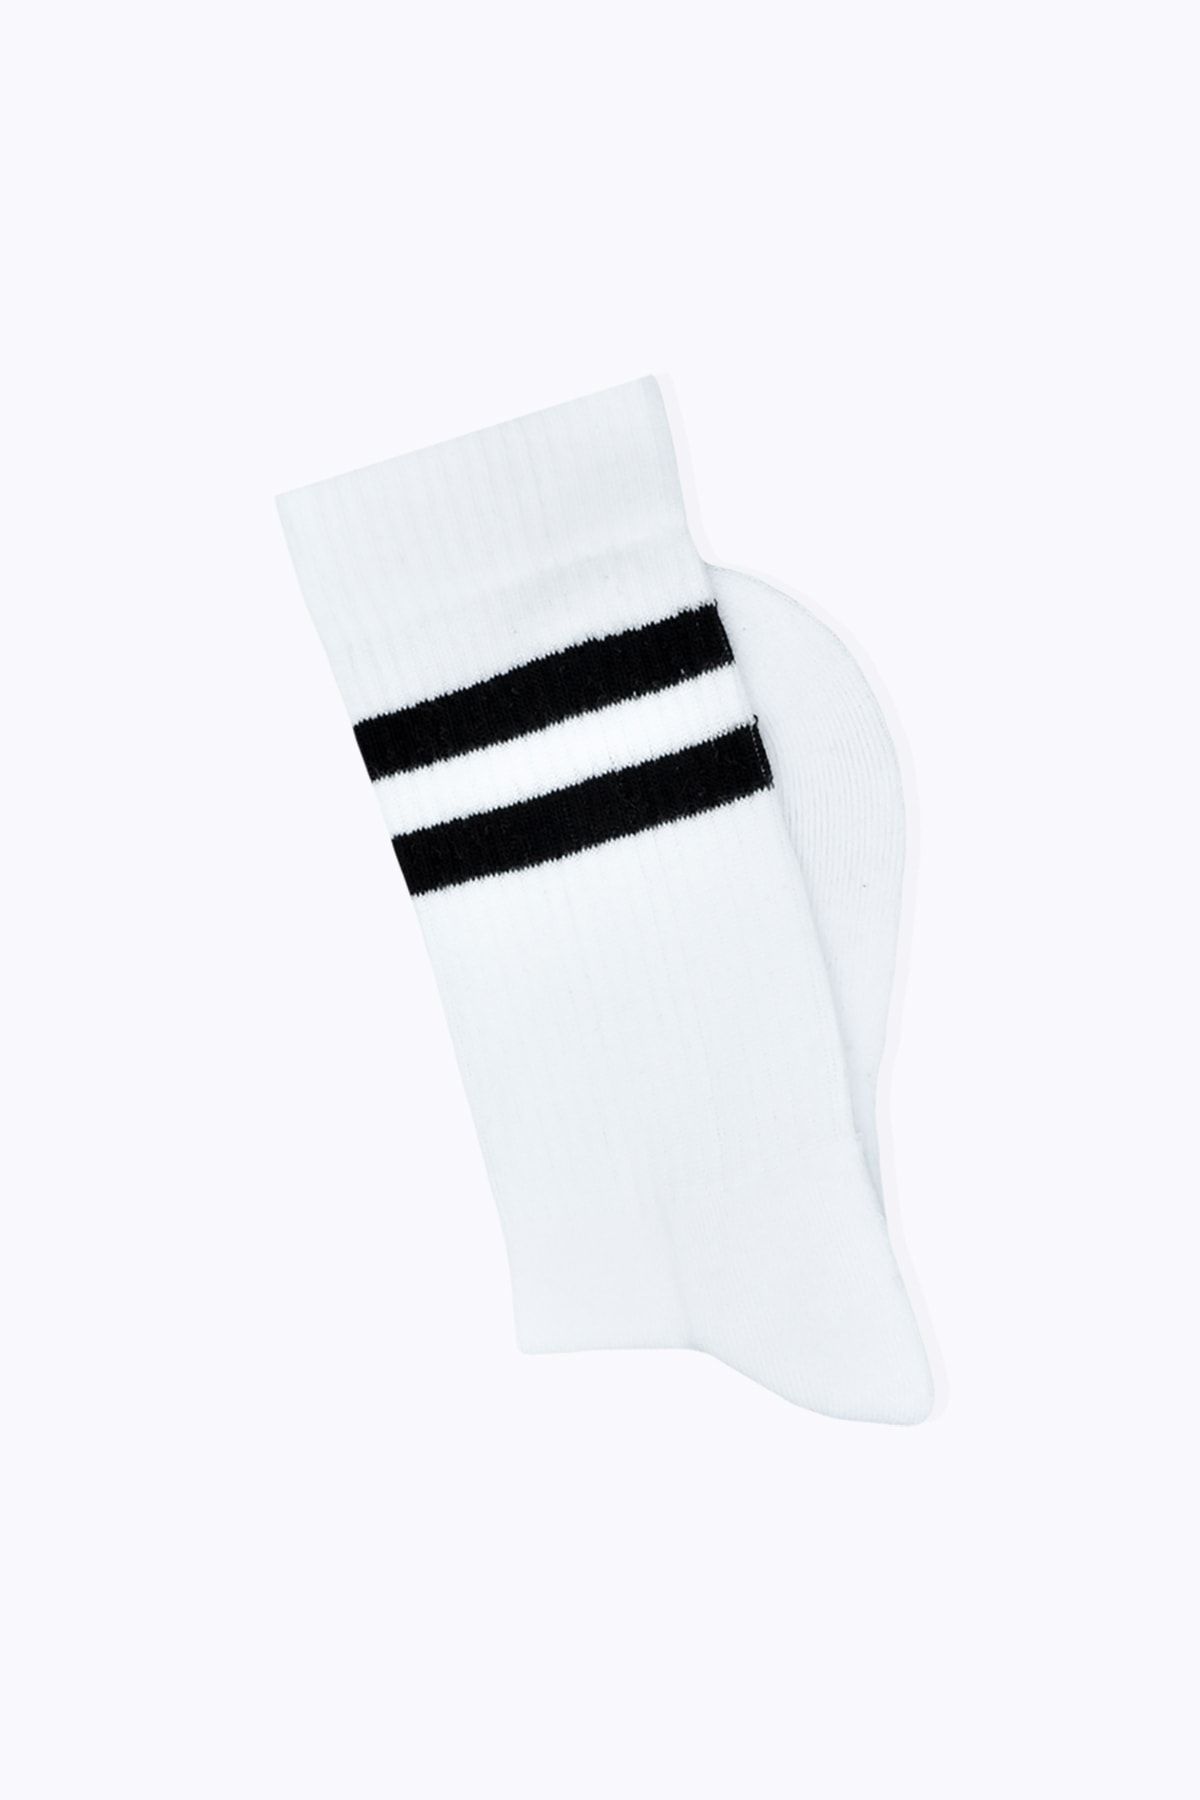 Socks Academy Siyah Çizgili Havlu Tabanlı Beyaz Çorap